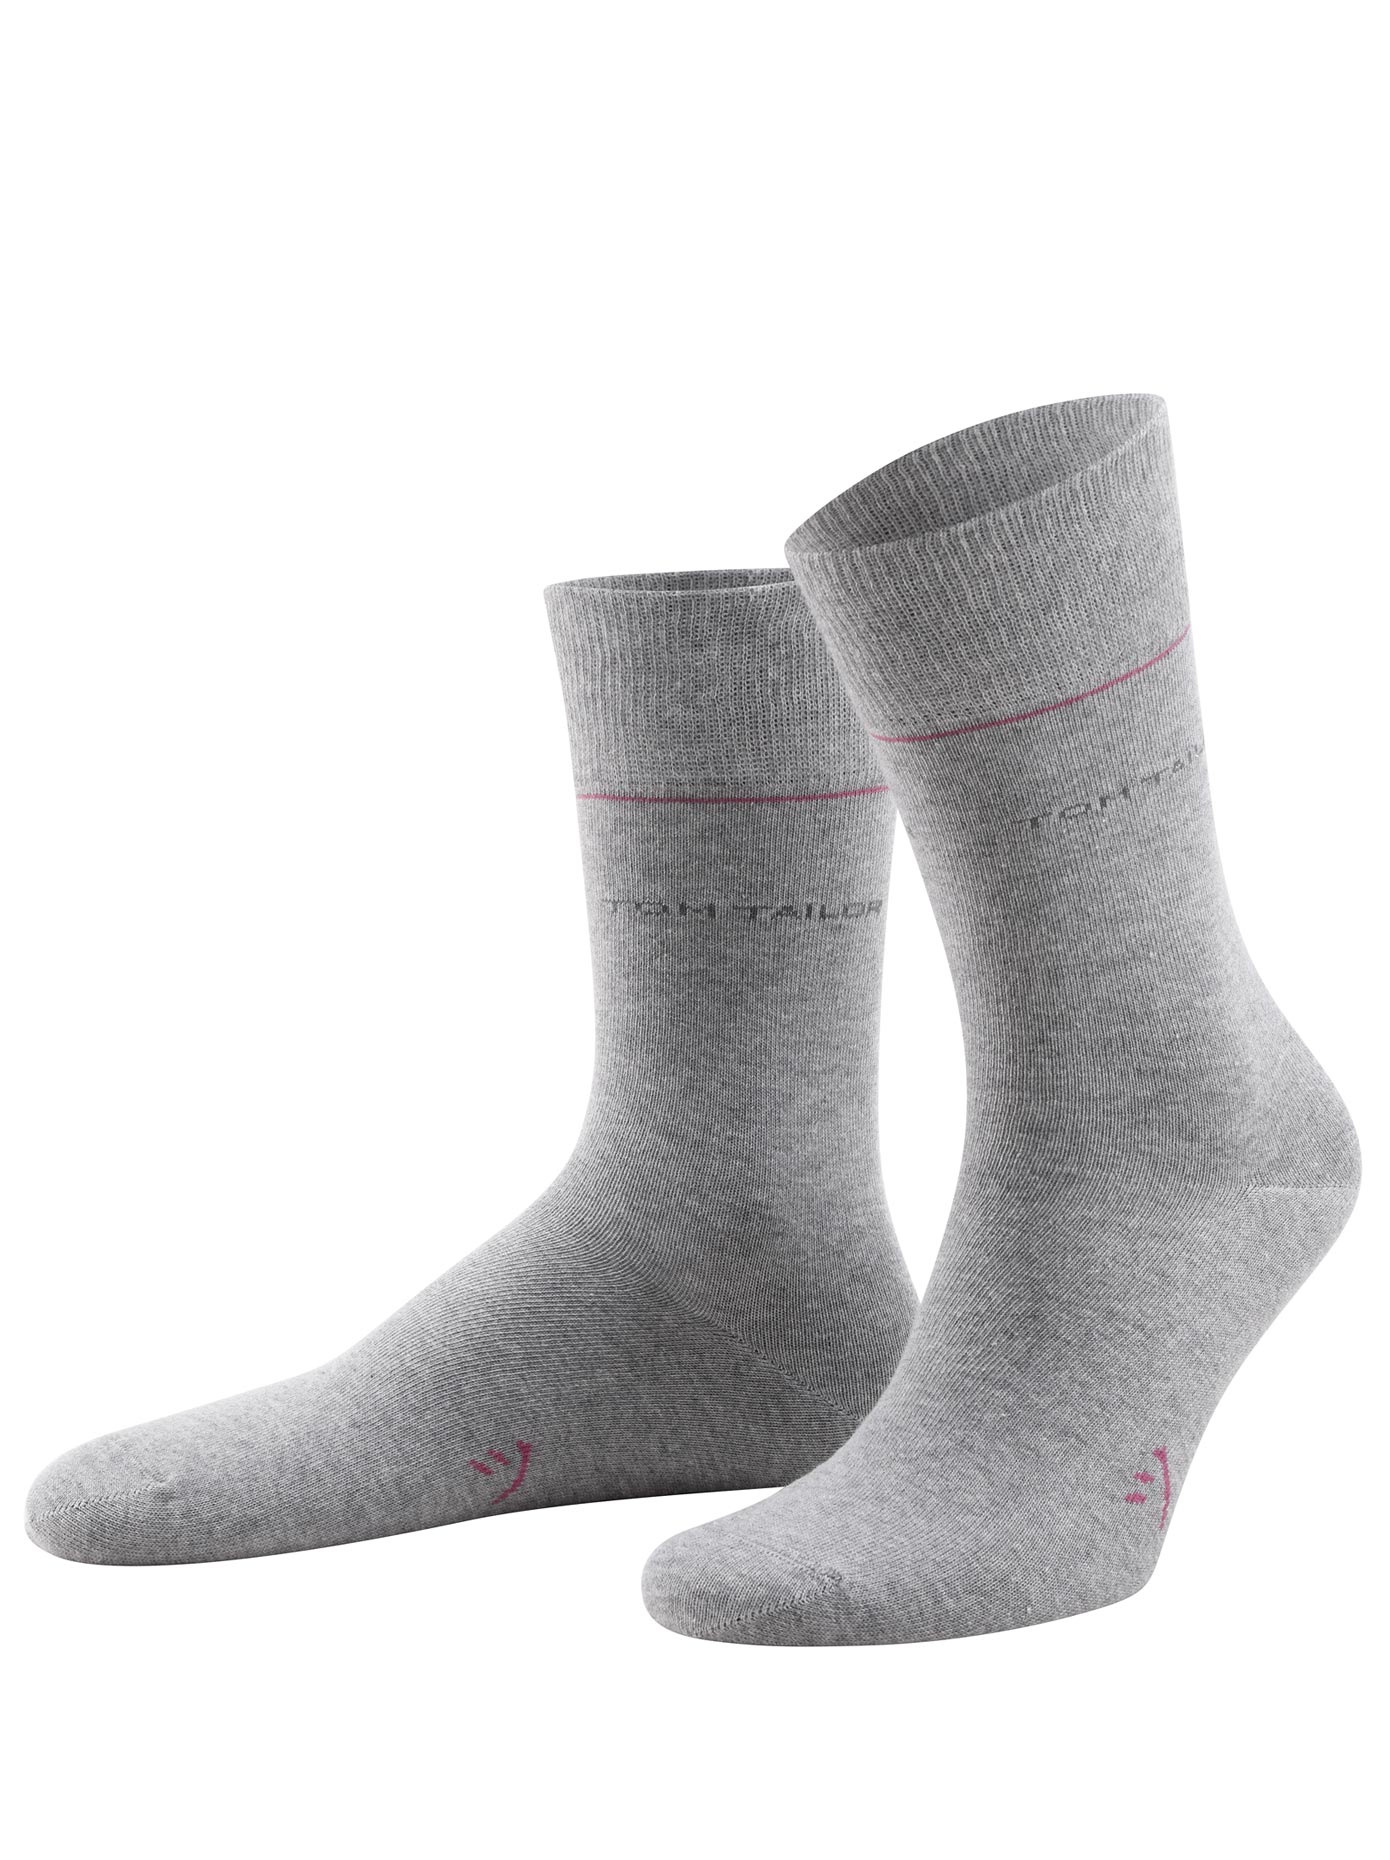 ➤ Strümpfe & Socken ohne Mindestbestellwert bestellen